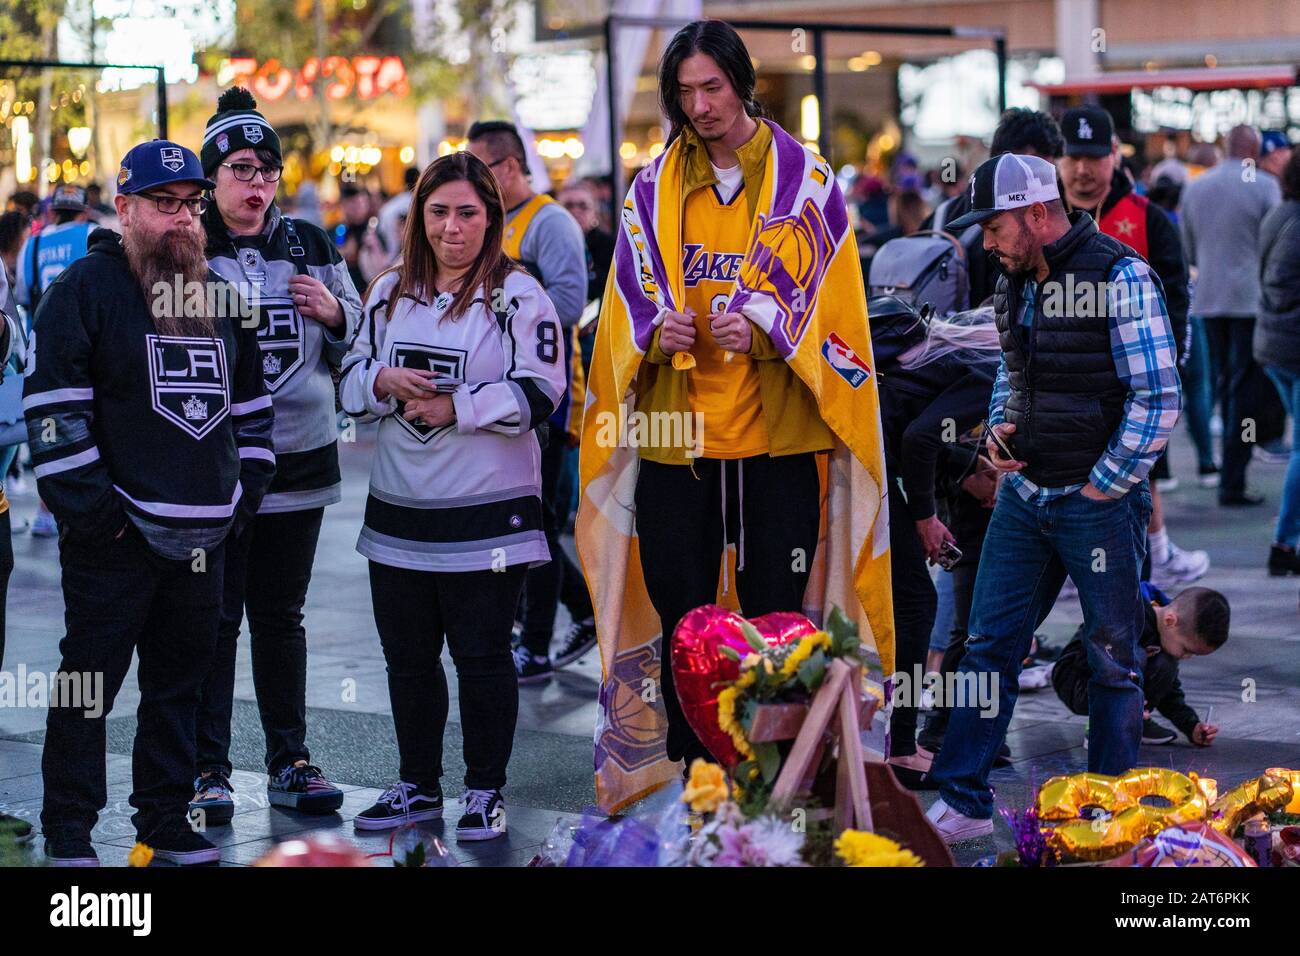 Kobe Bryant: How Lakers fans mourned NBA star outside Staples Center